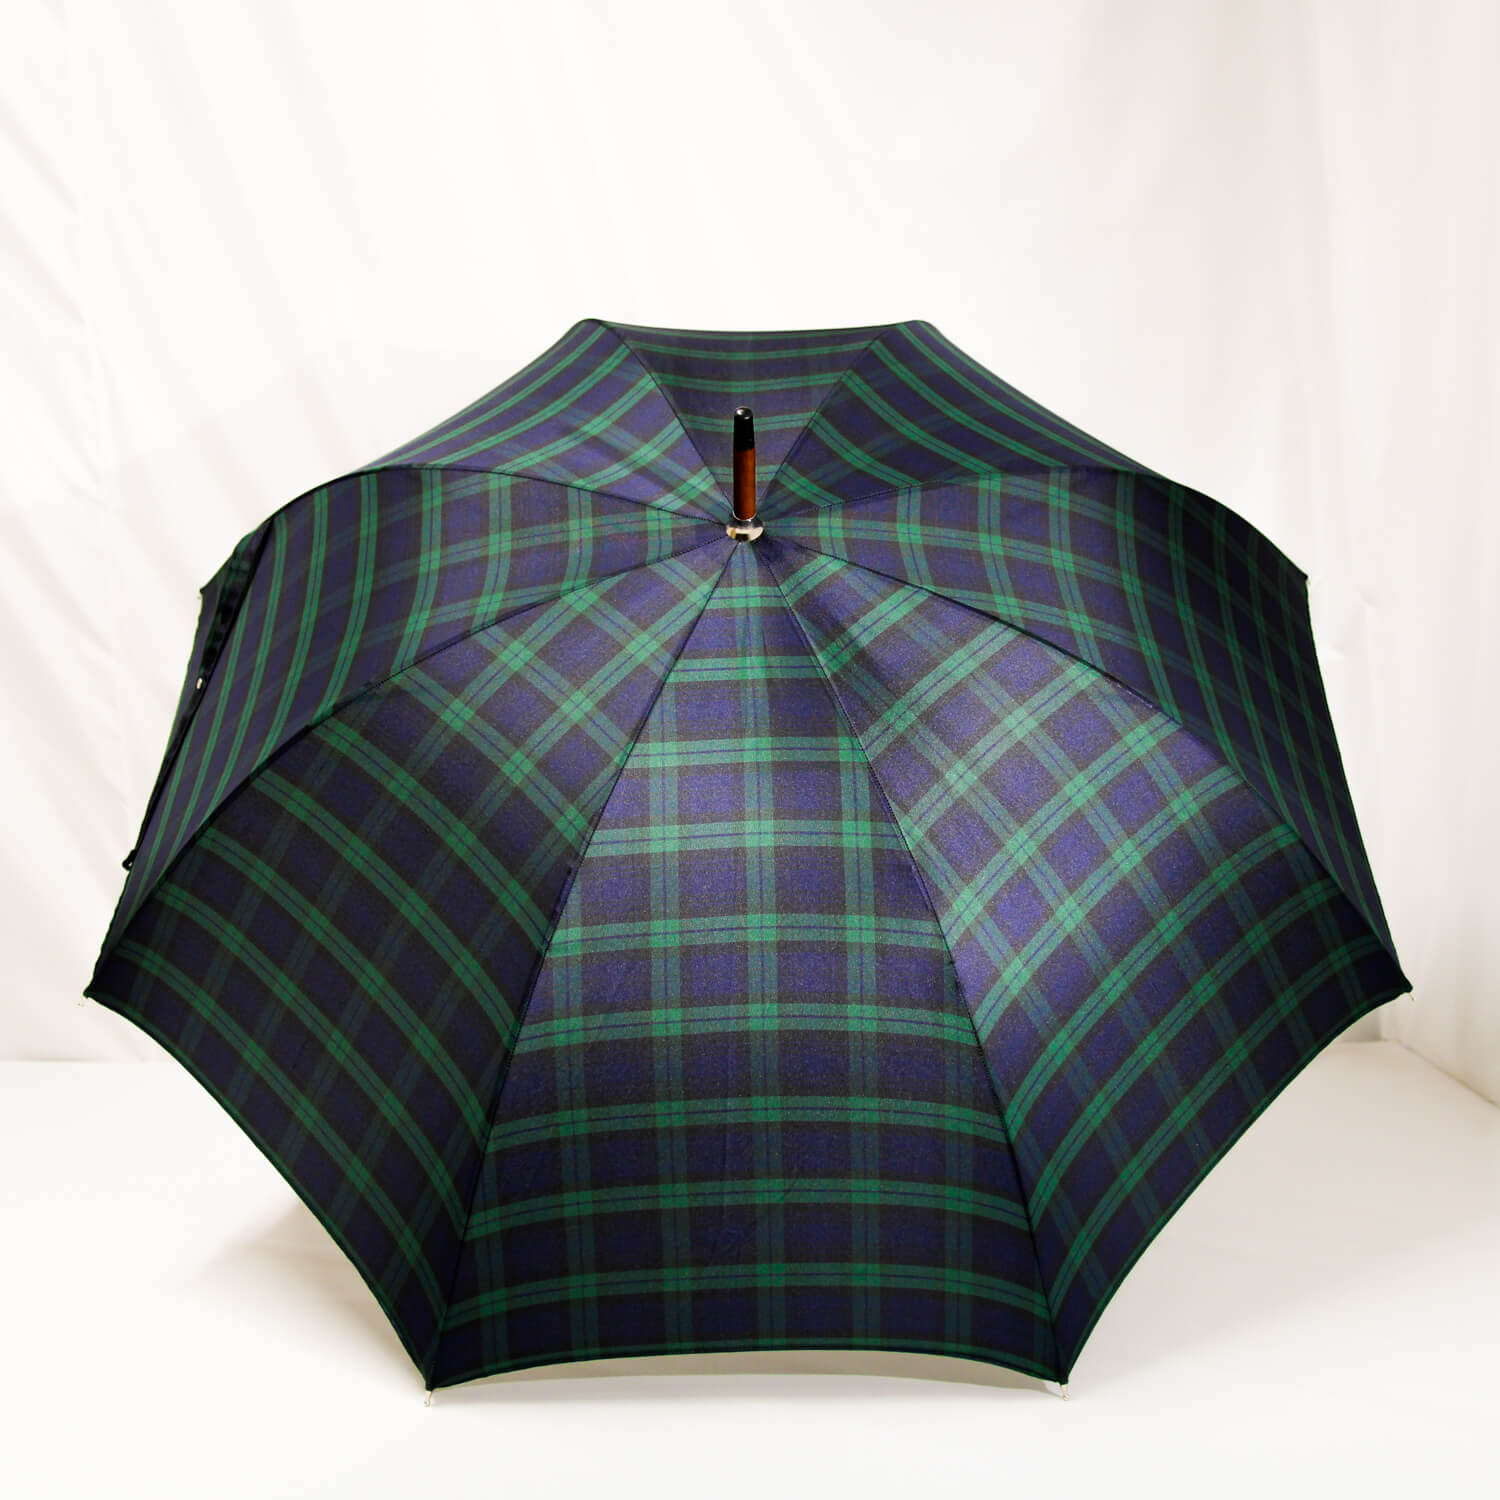 Parapluie droit écossais vert et bleu